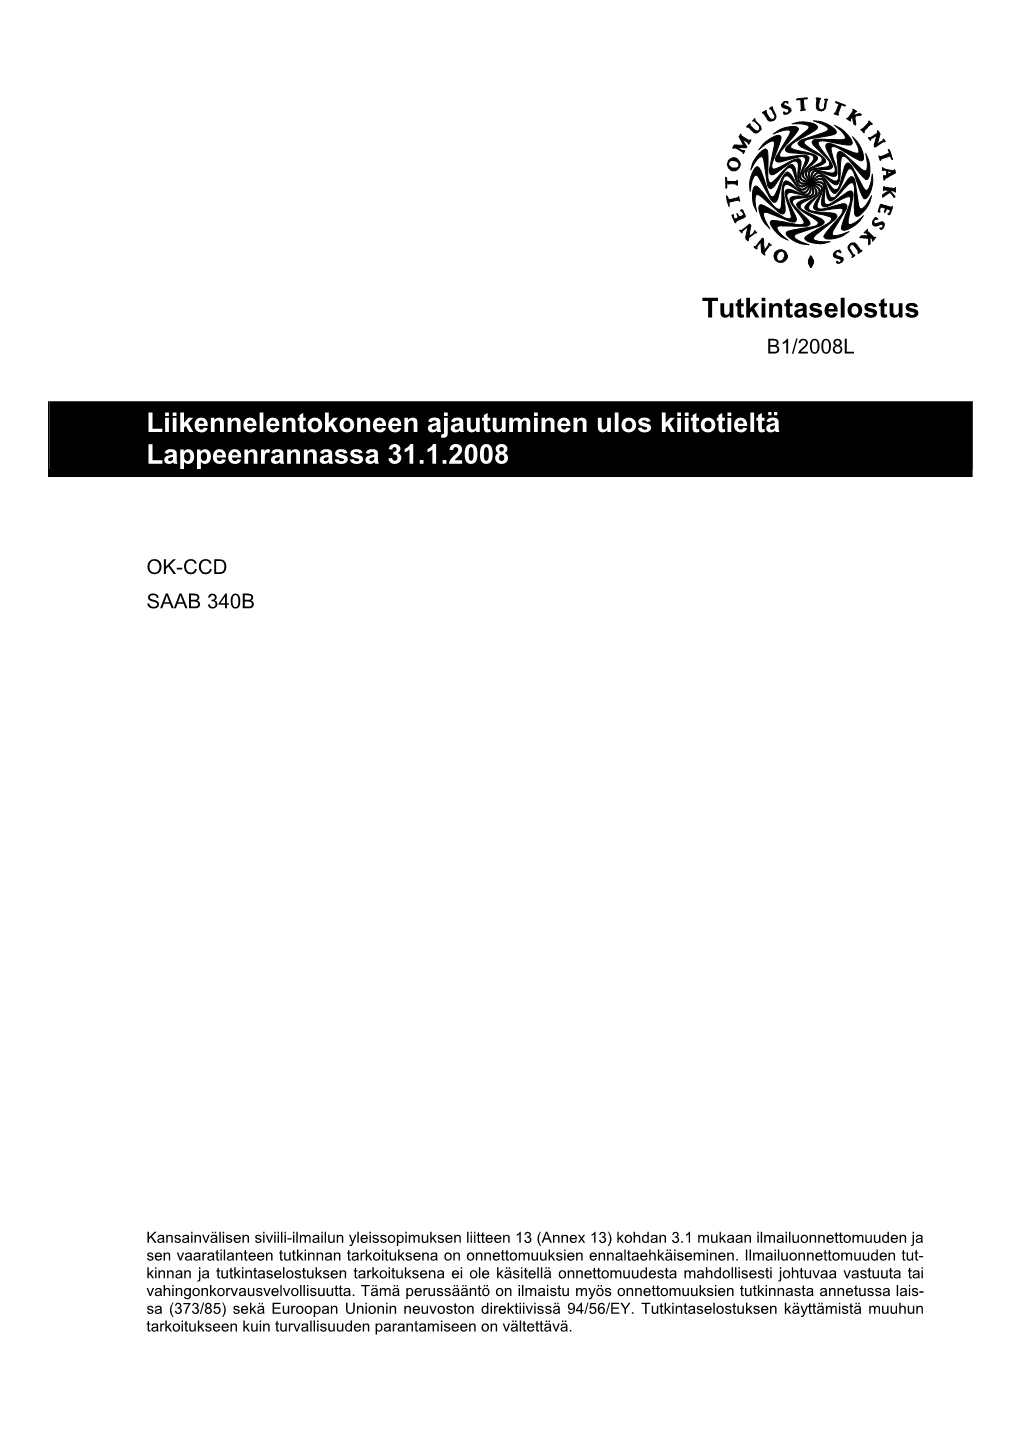 Tutkintaselostus Liikennelentokoneen Ajautuminen Ulos Kiitotieltä Lappeenrannassa 31.1.2008